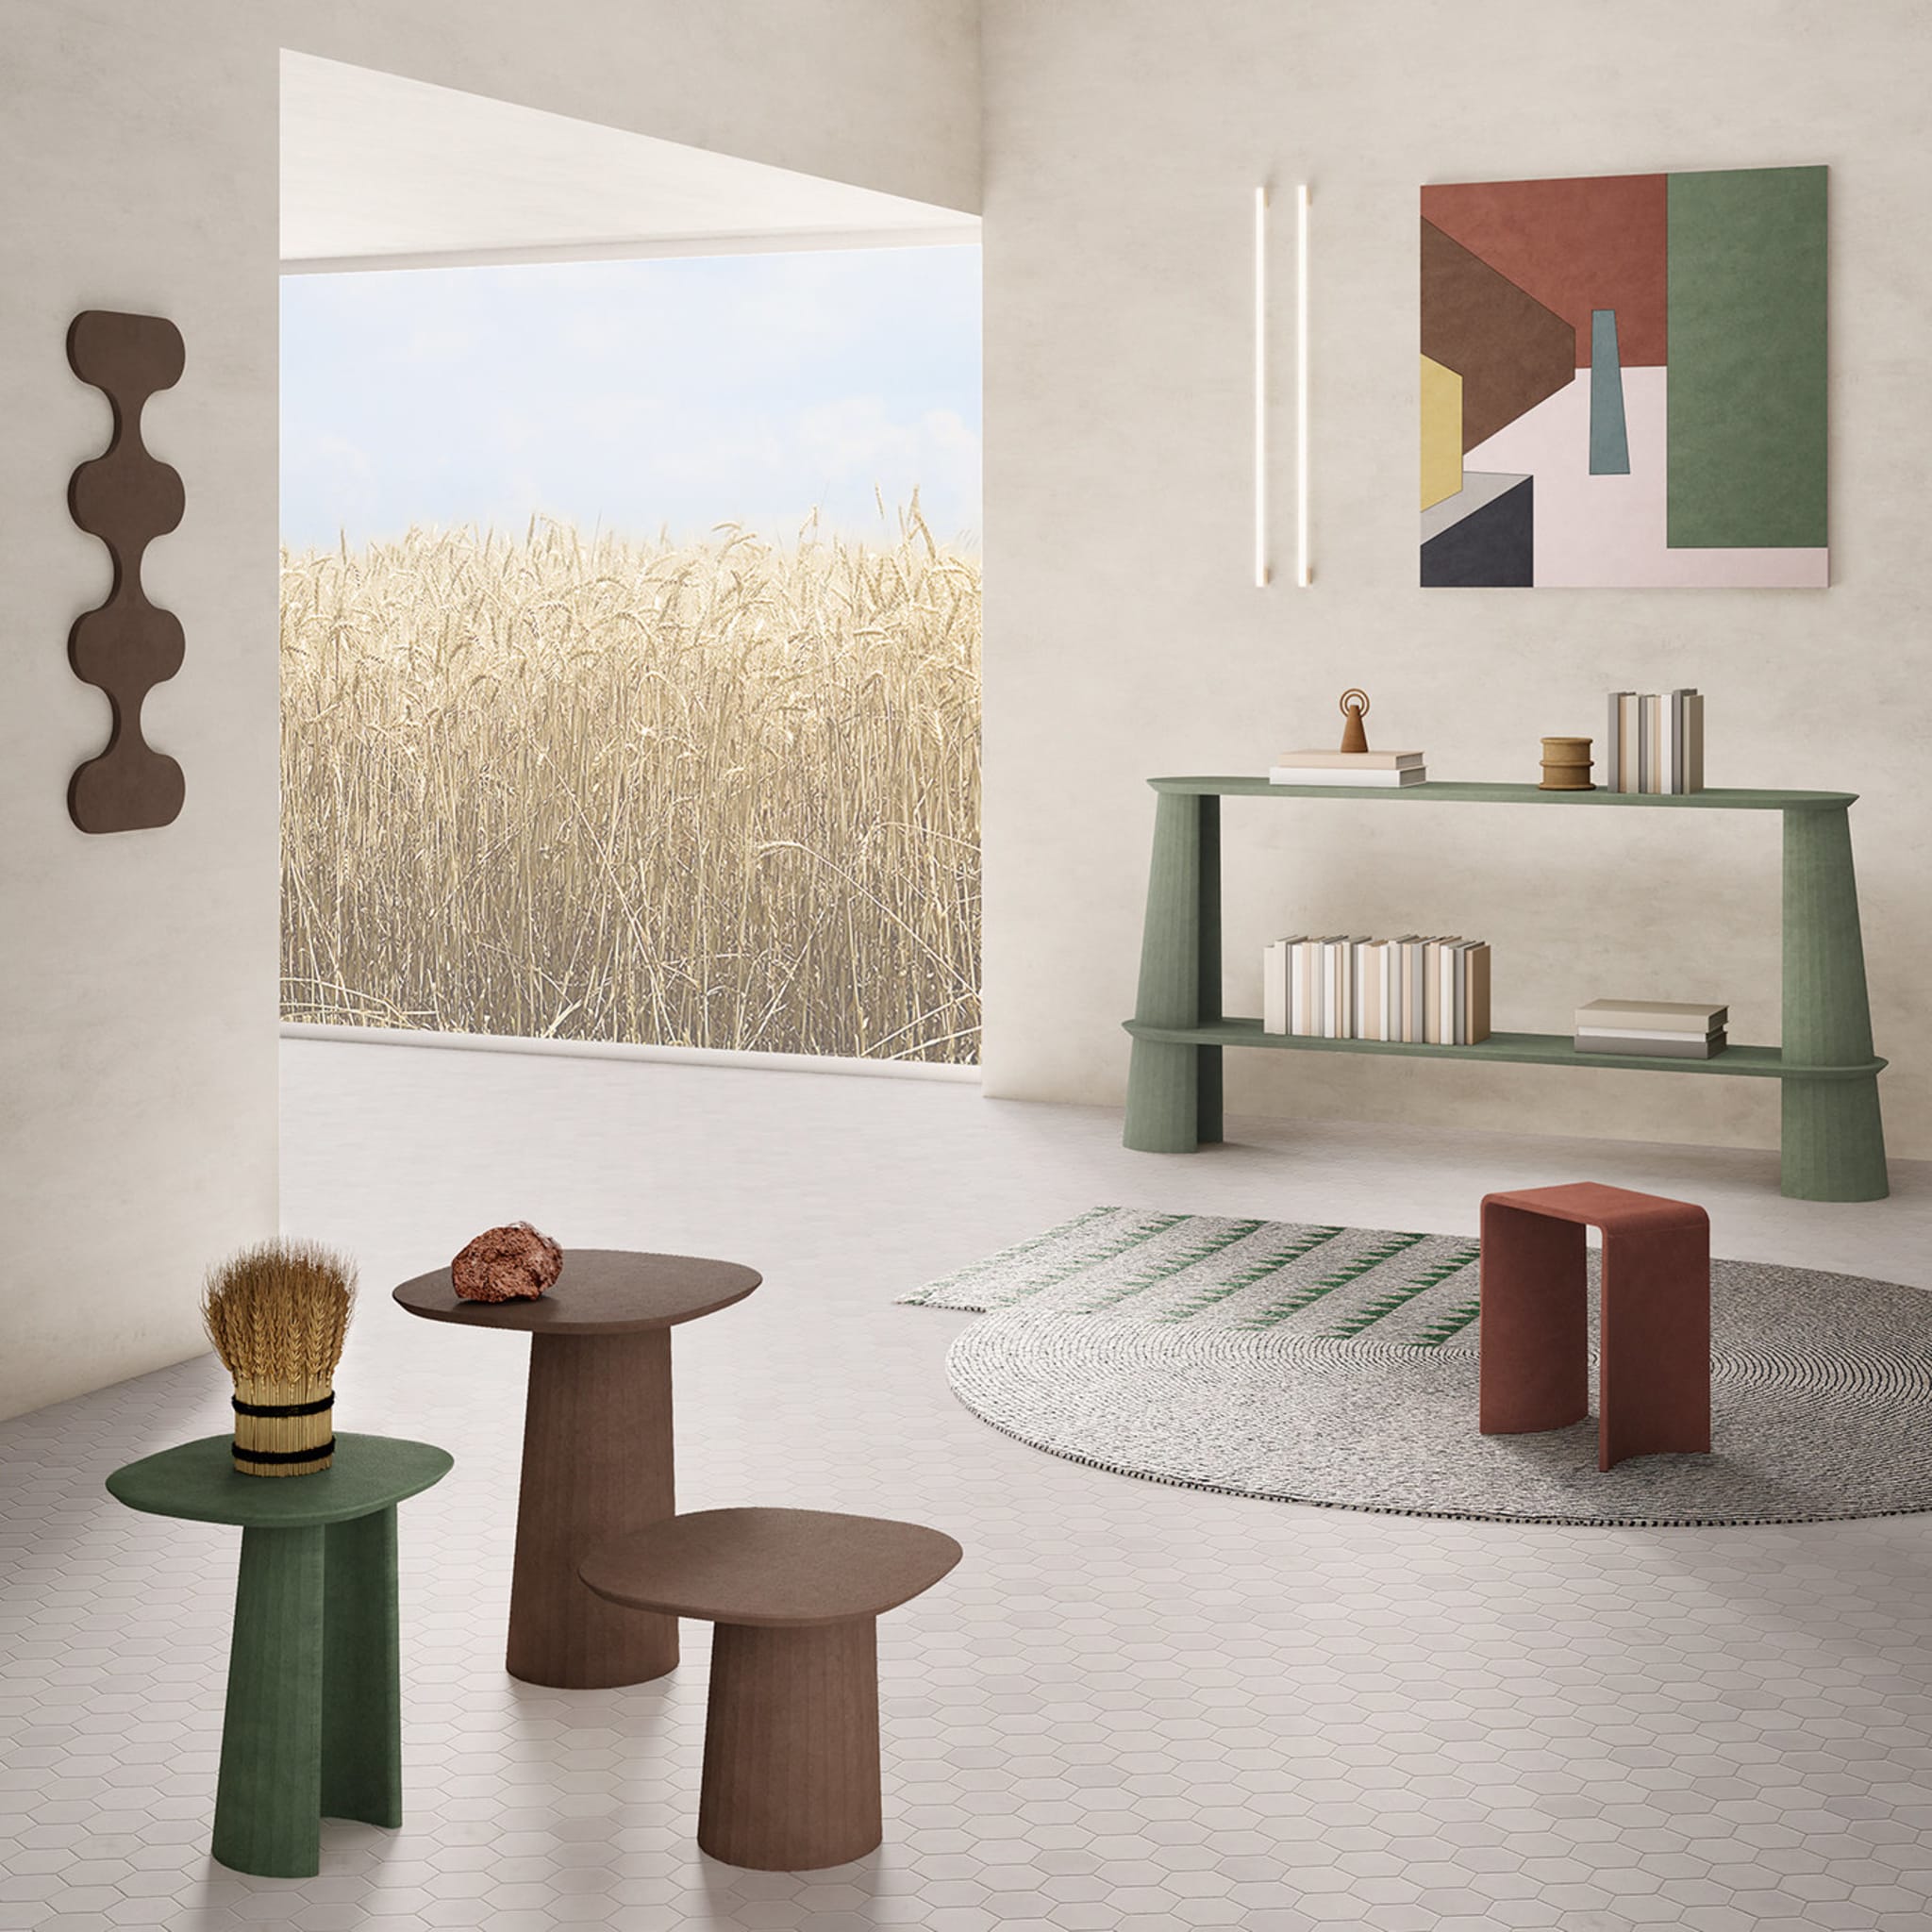 Domestic Concrete Landscape Moodboard III by Marialaura Rossiello Irvine - Alternative view 1